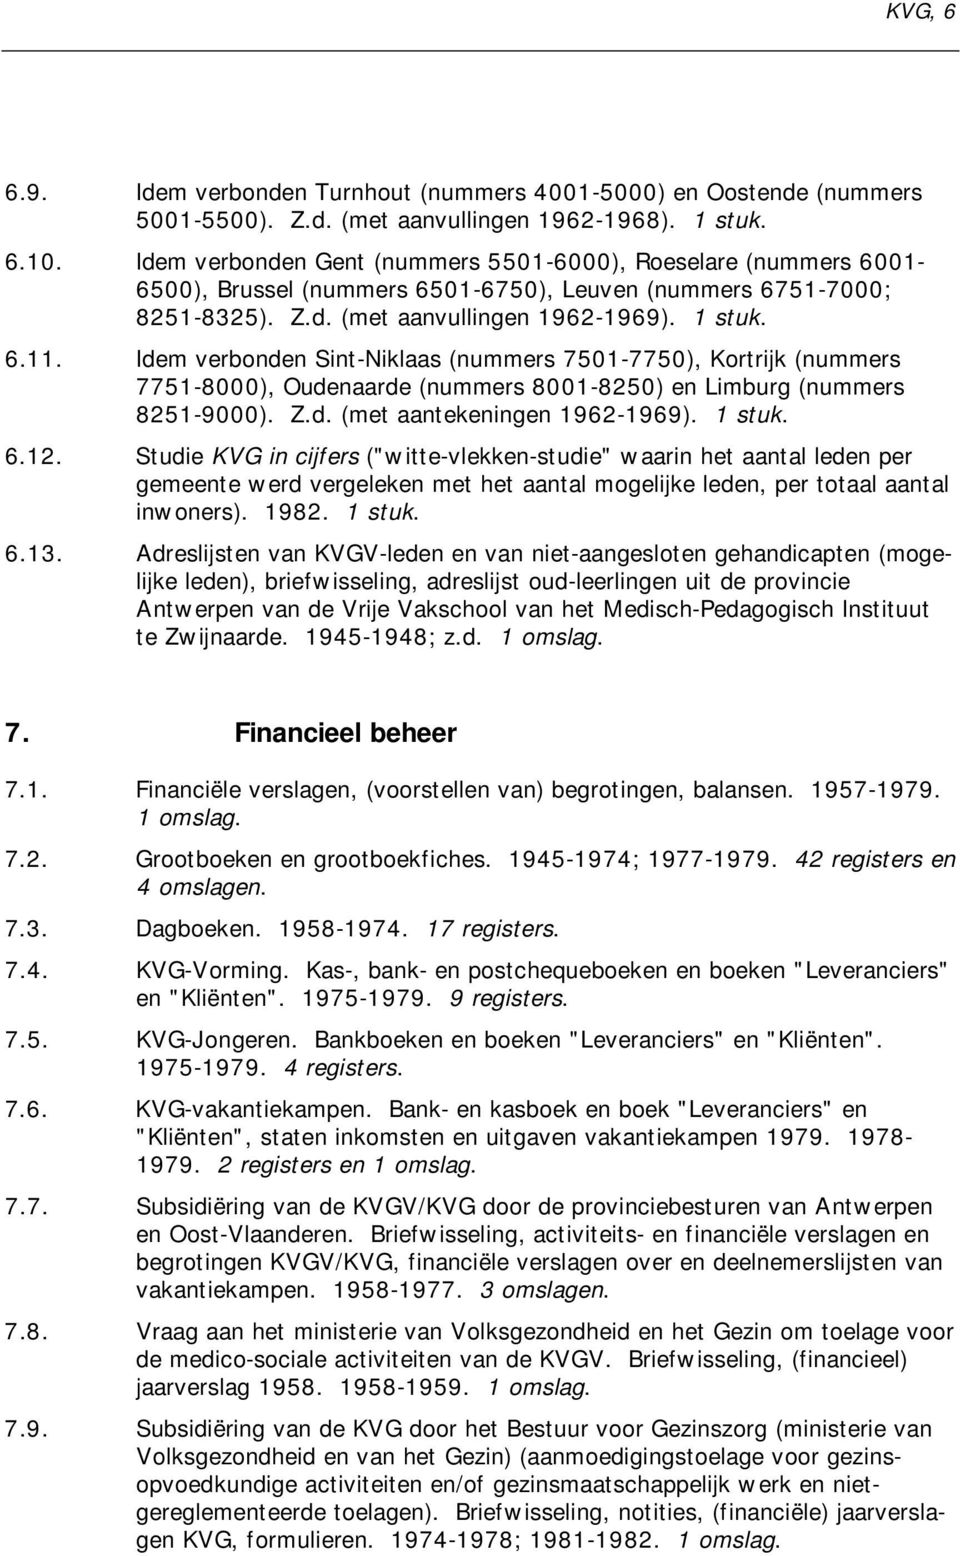 Idem verbonden Sint-Niklaas (nummers 7501-7750), Kortrijk (nummers 7751-8000), Oudenaarde (nummers 8001-8250) en Limburg (nummers 8251-9000). Z.d. (met aantekeningen 1962-1969). 1 stuk. 6.12.